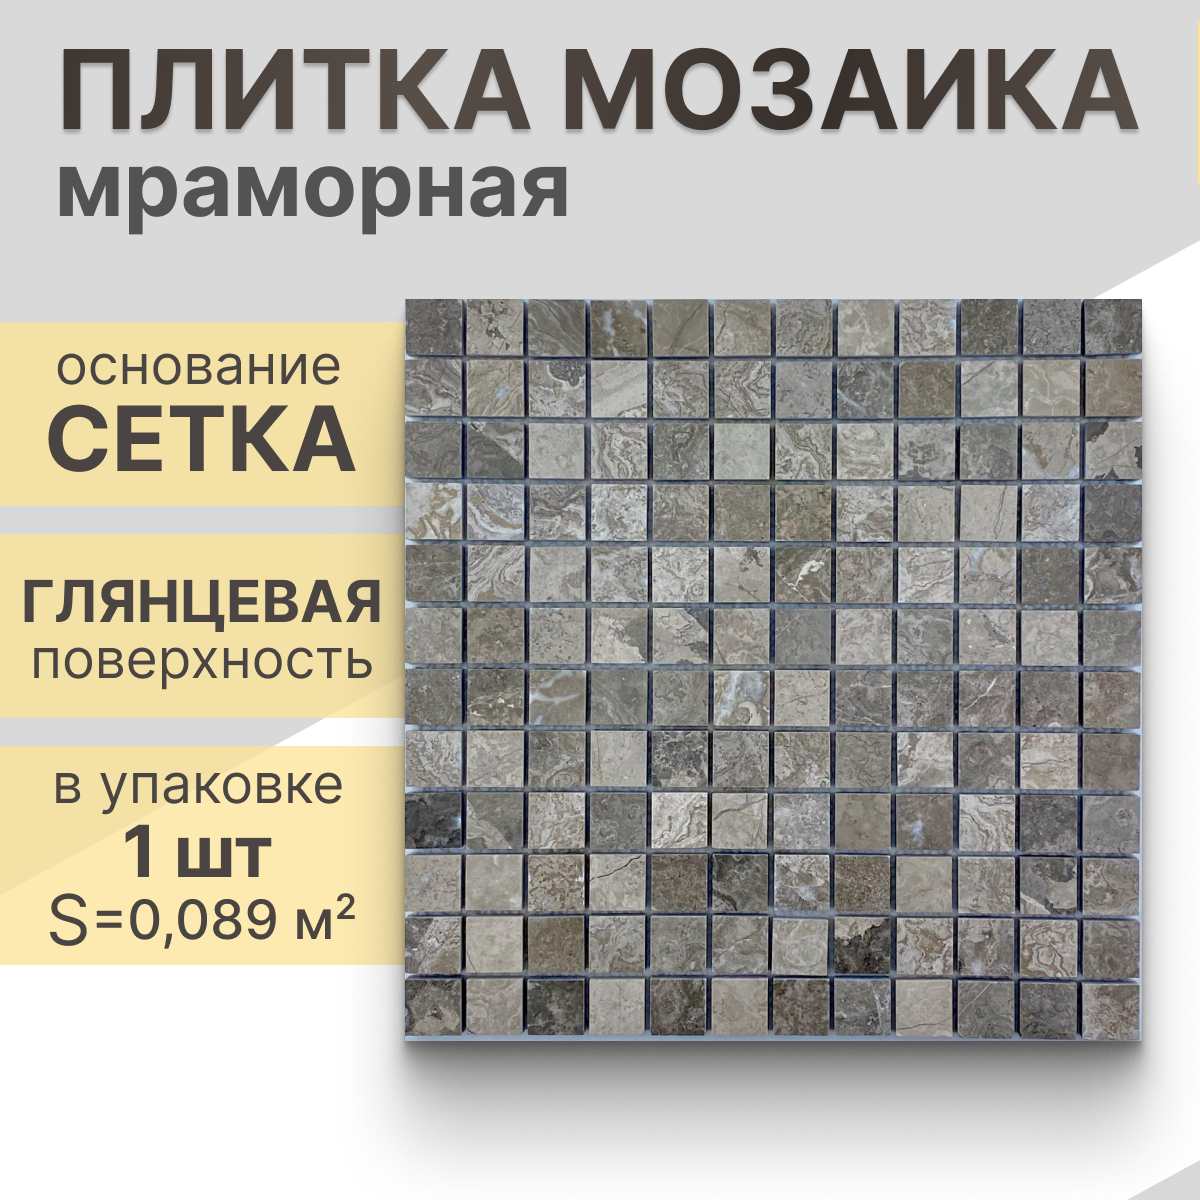 Мозаика (мрамор) NS mosaic Kp-722 29.8X29,8 см 1 шт (0,089 м²)